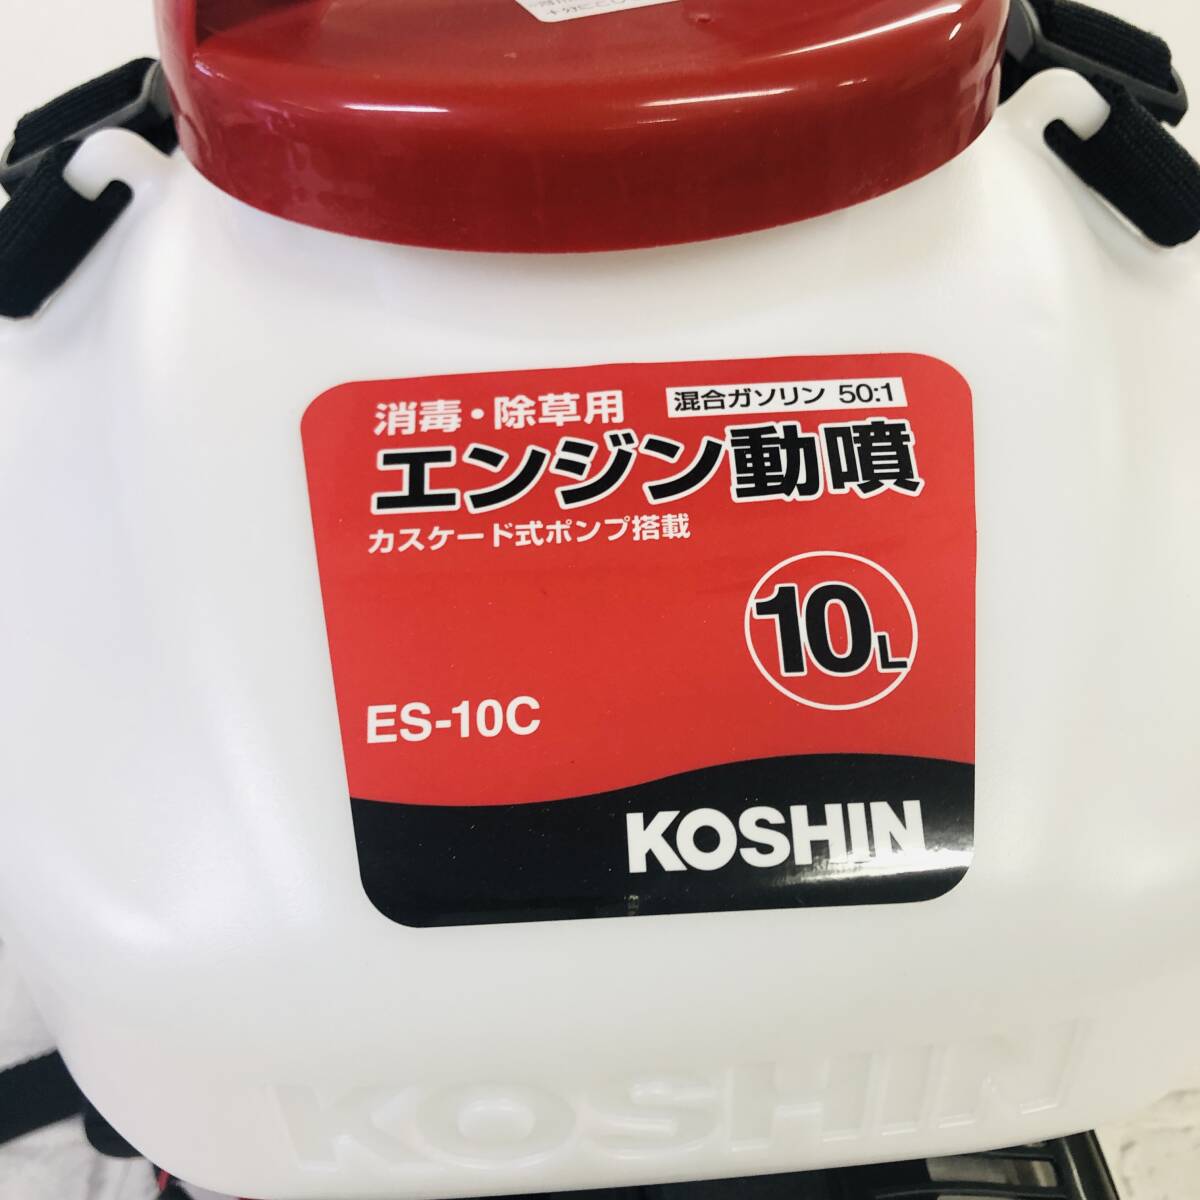  включение в покупку не возможно *[ текущее состояние товар ]KOSHIN Koshin двигатель моторный опрыскиватель сад распылитель ES-10C rental ke-do тип распылитель * на изображении есть принадлежности . полностью *05-007D